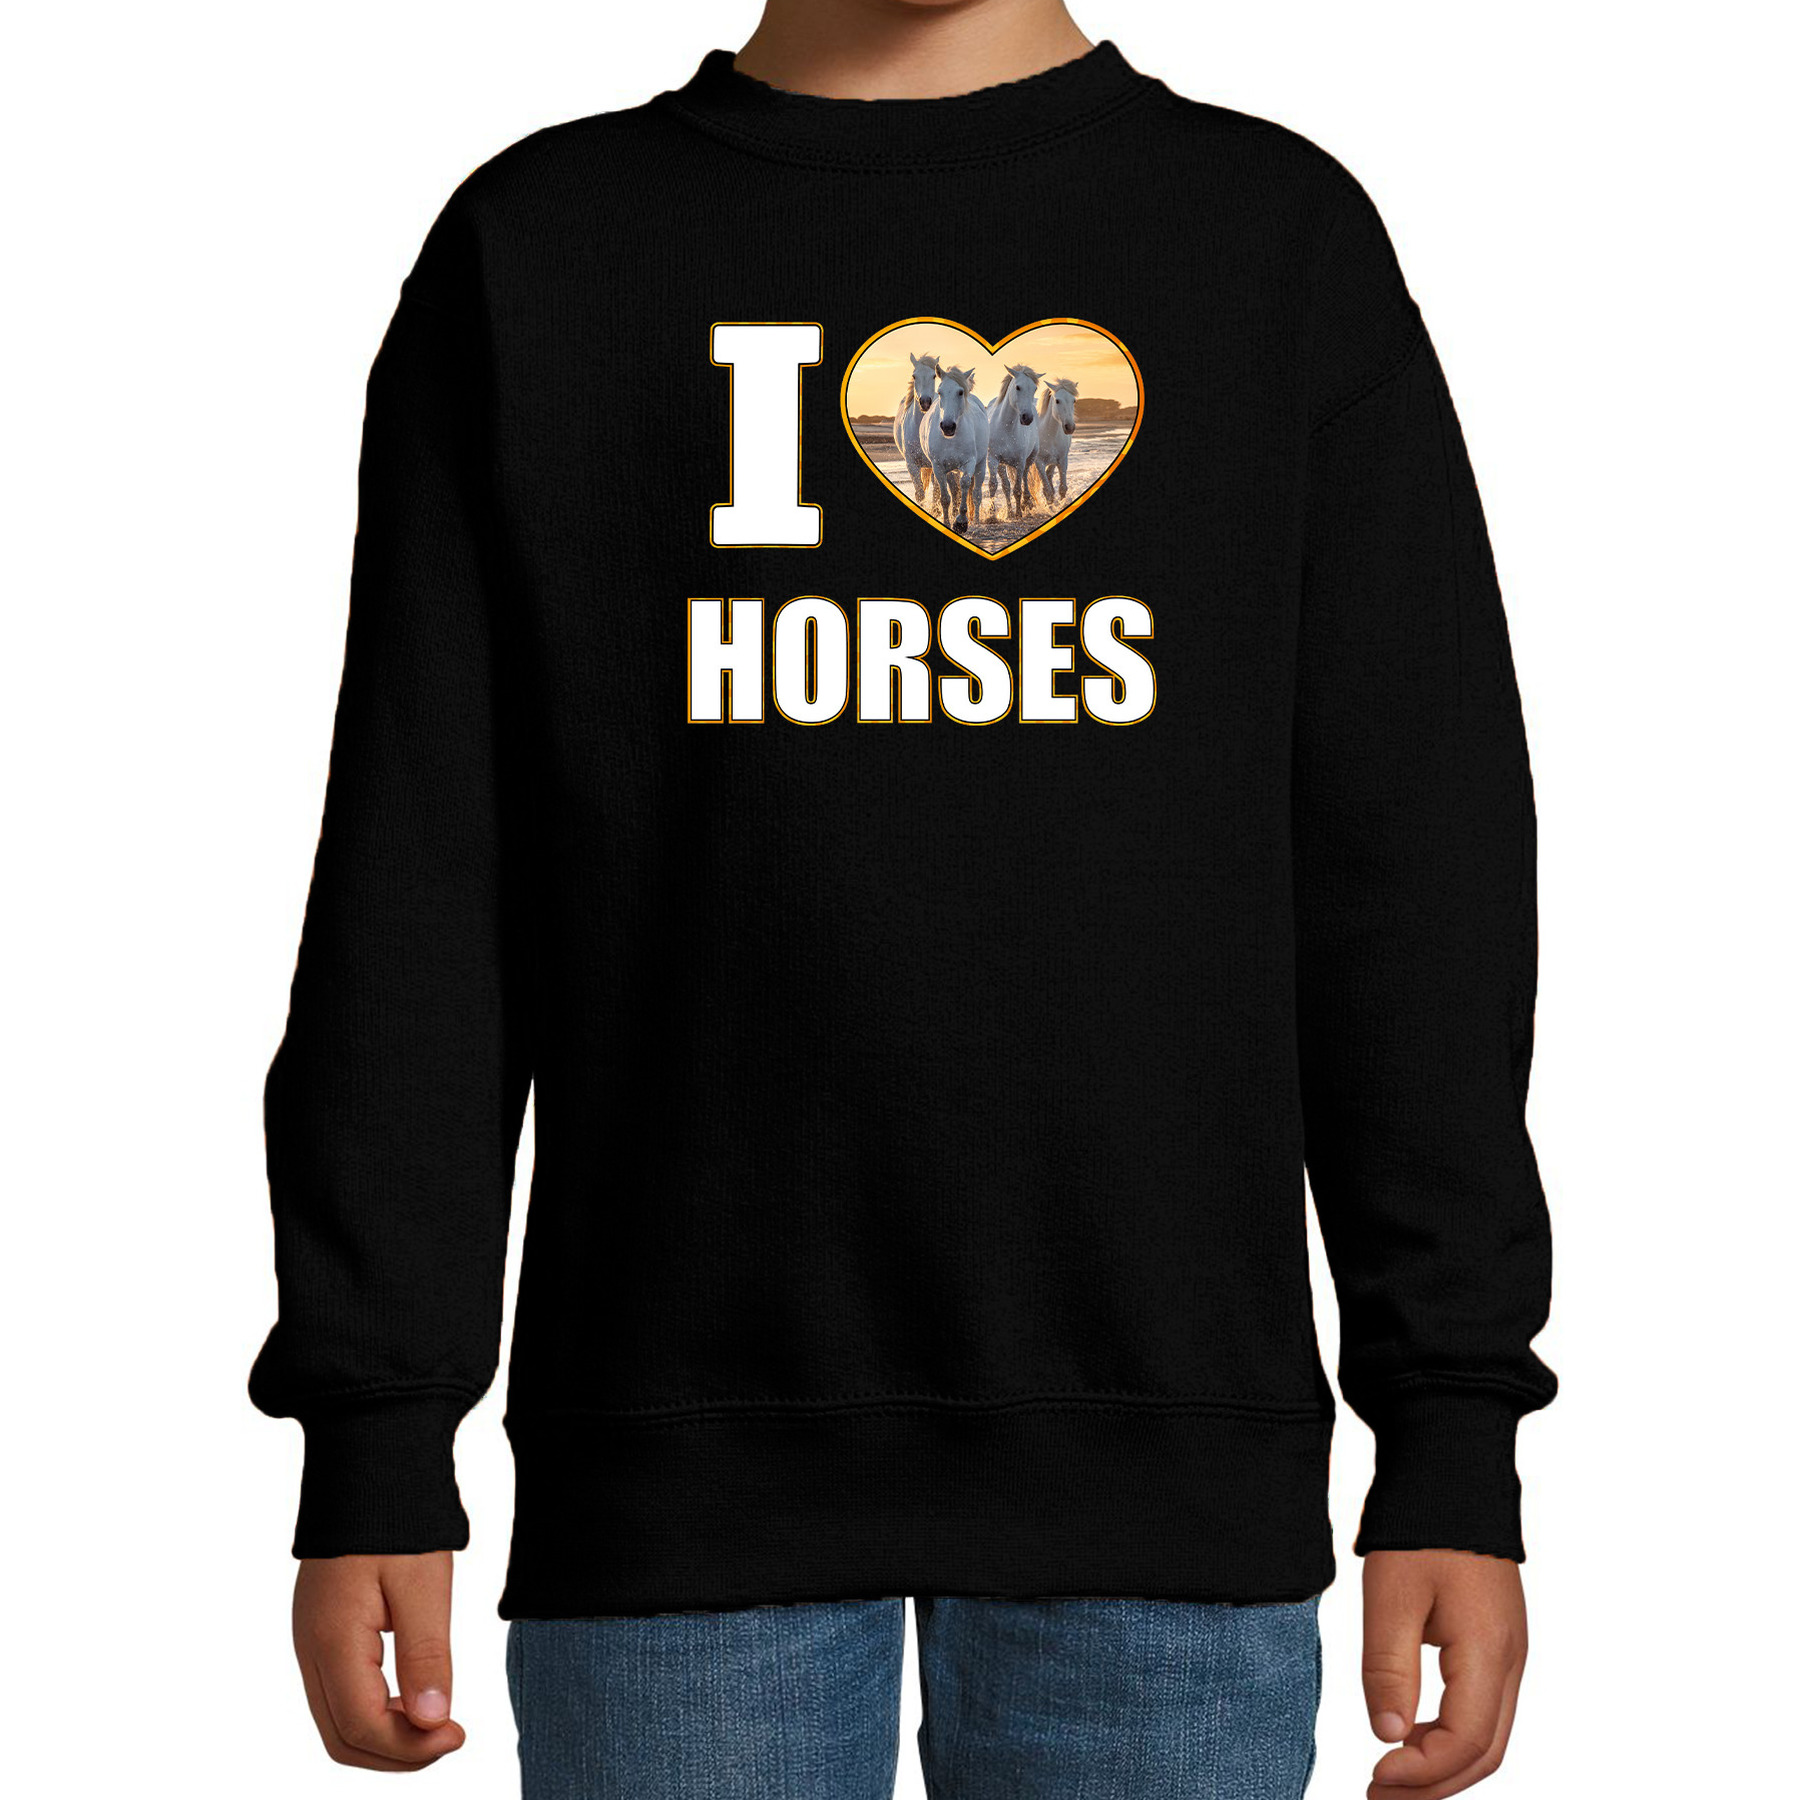 I love horses sweater - trui met dieren foto van een wit paard zwart voor kinderen